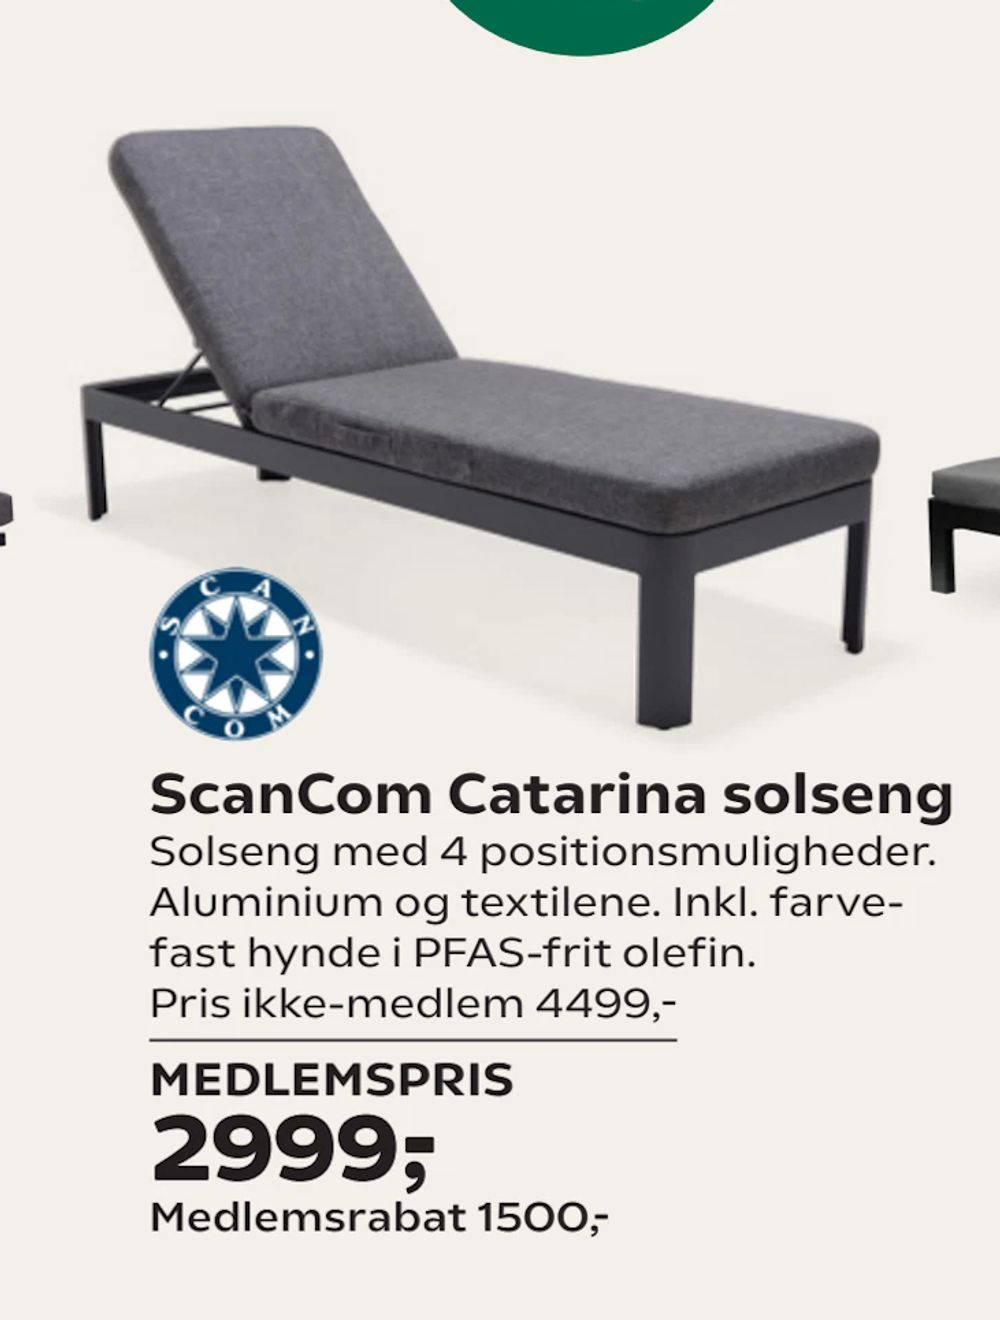 Tilbud på ScanCom Catarina solseng fra Coop.dk til 4.499 kr.